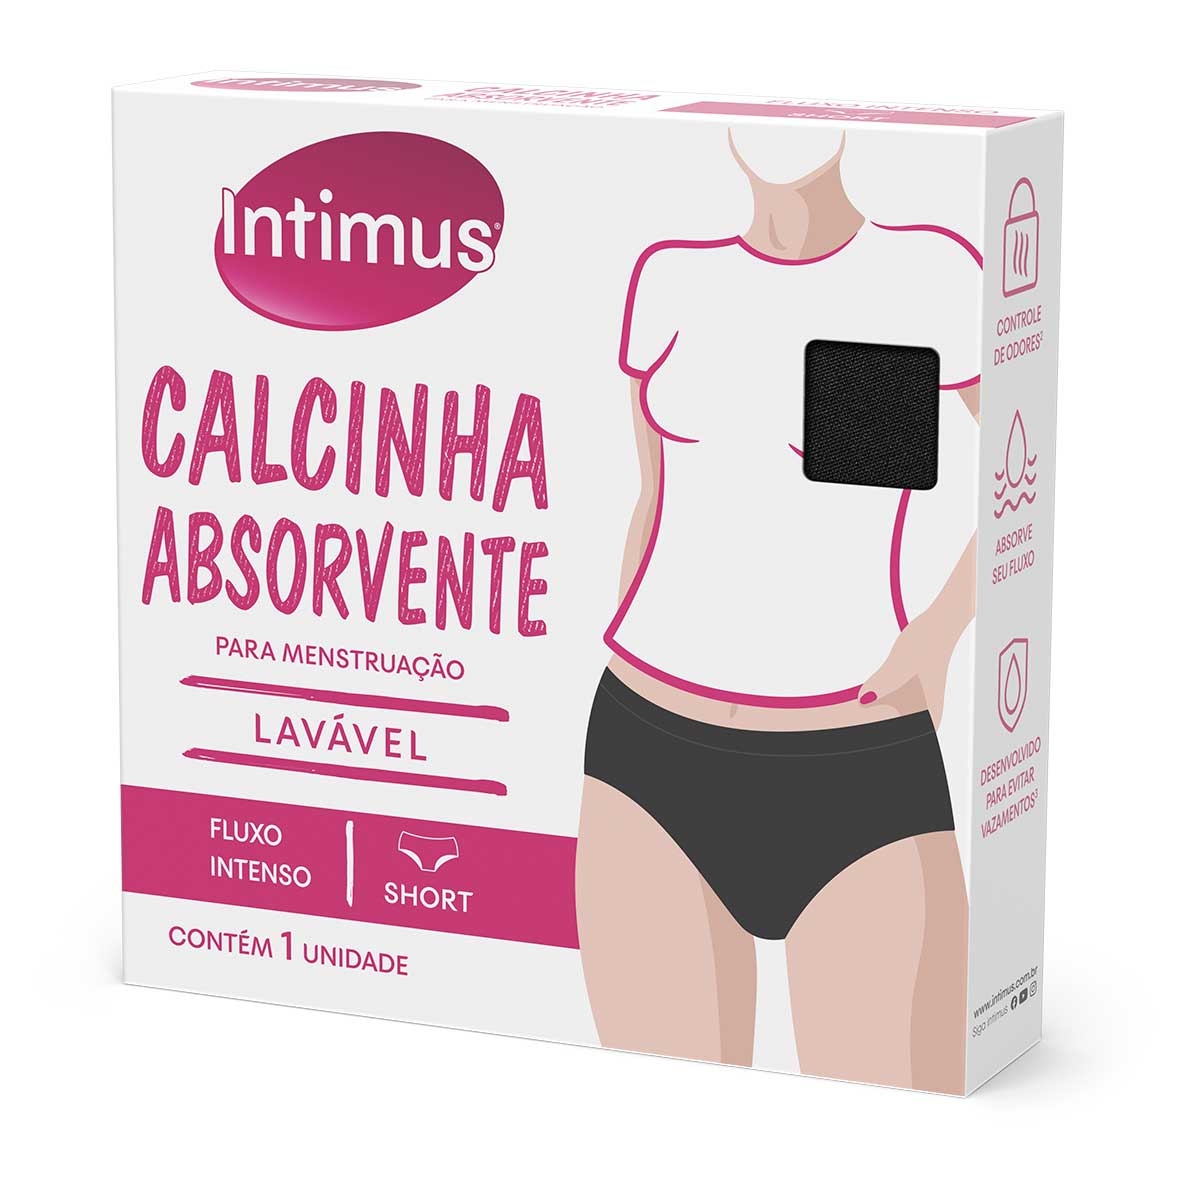 Calcinha absorvente menstrual Intimus Short XG compre em oferta